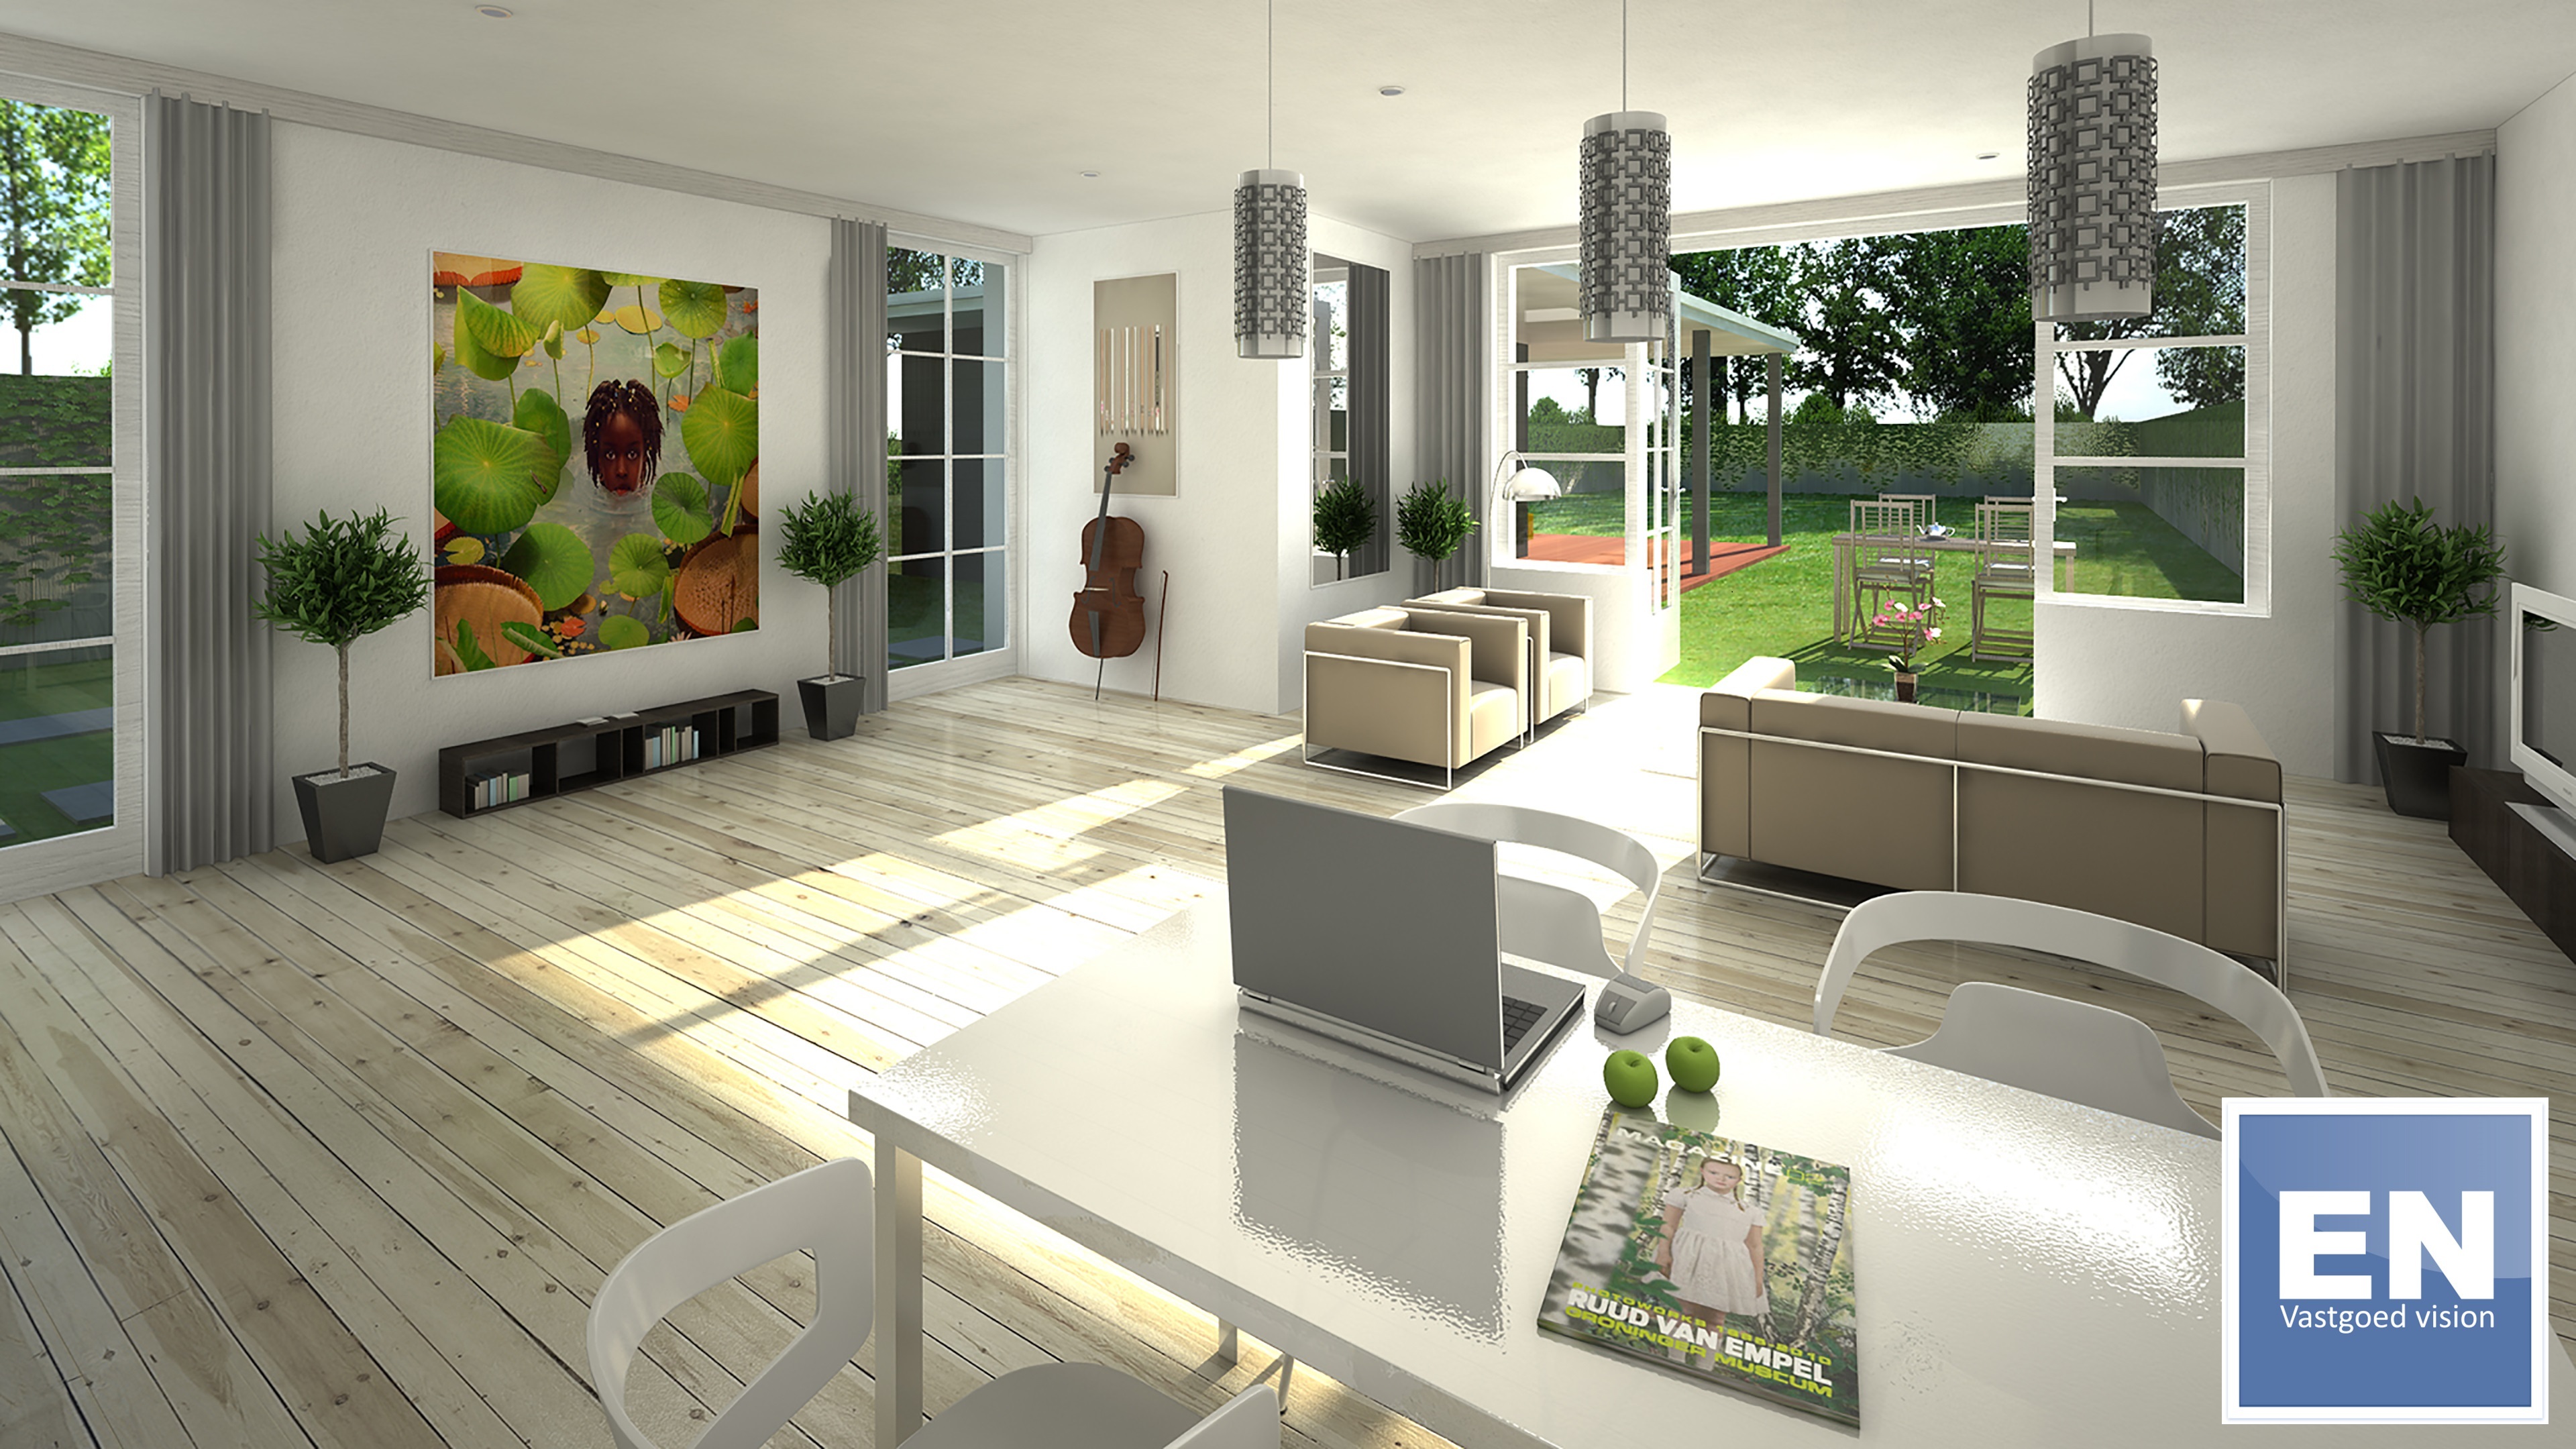 EN Vastgoed - HD Artist Impression interieur woonkamer met tuin.jpg